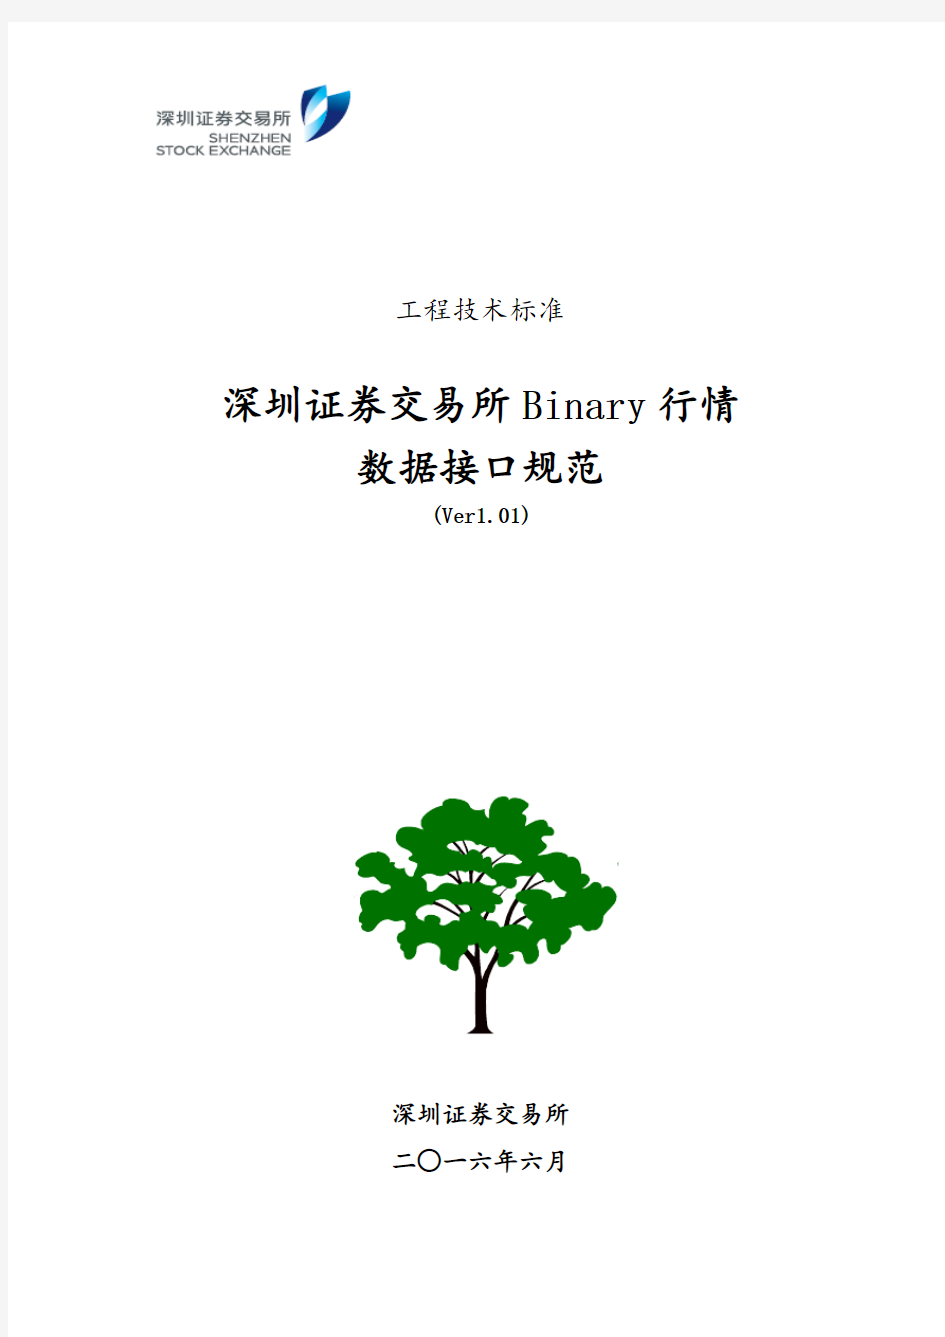 深圳证券交易所Binary行情数据接口规范(Ver1.01)